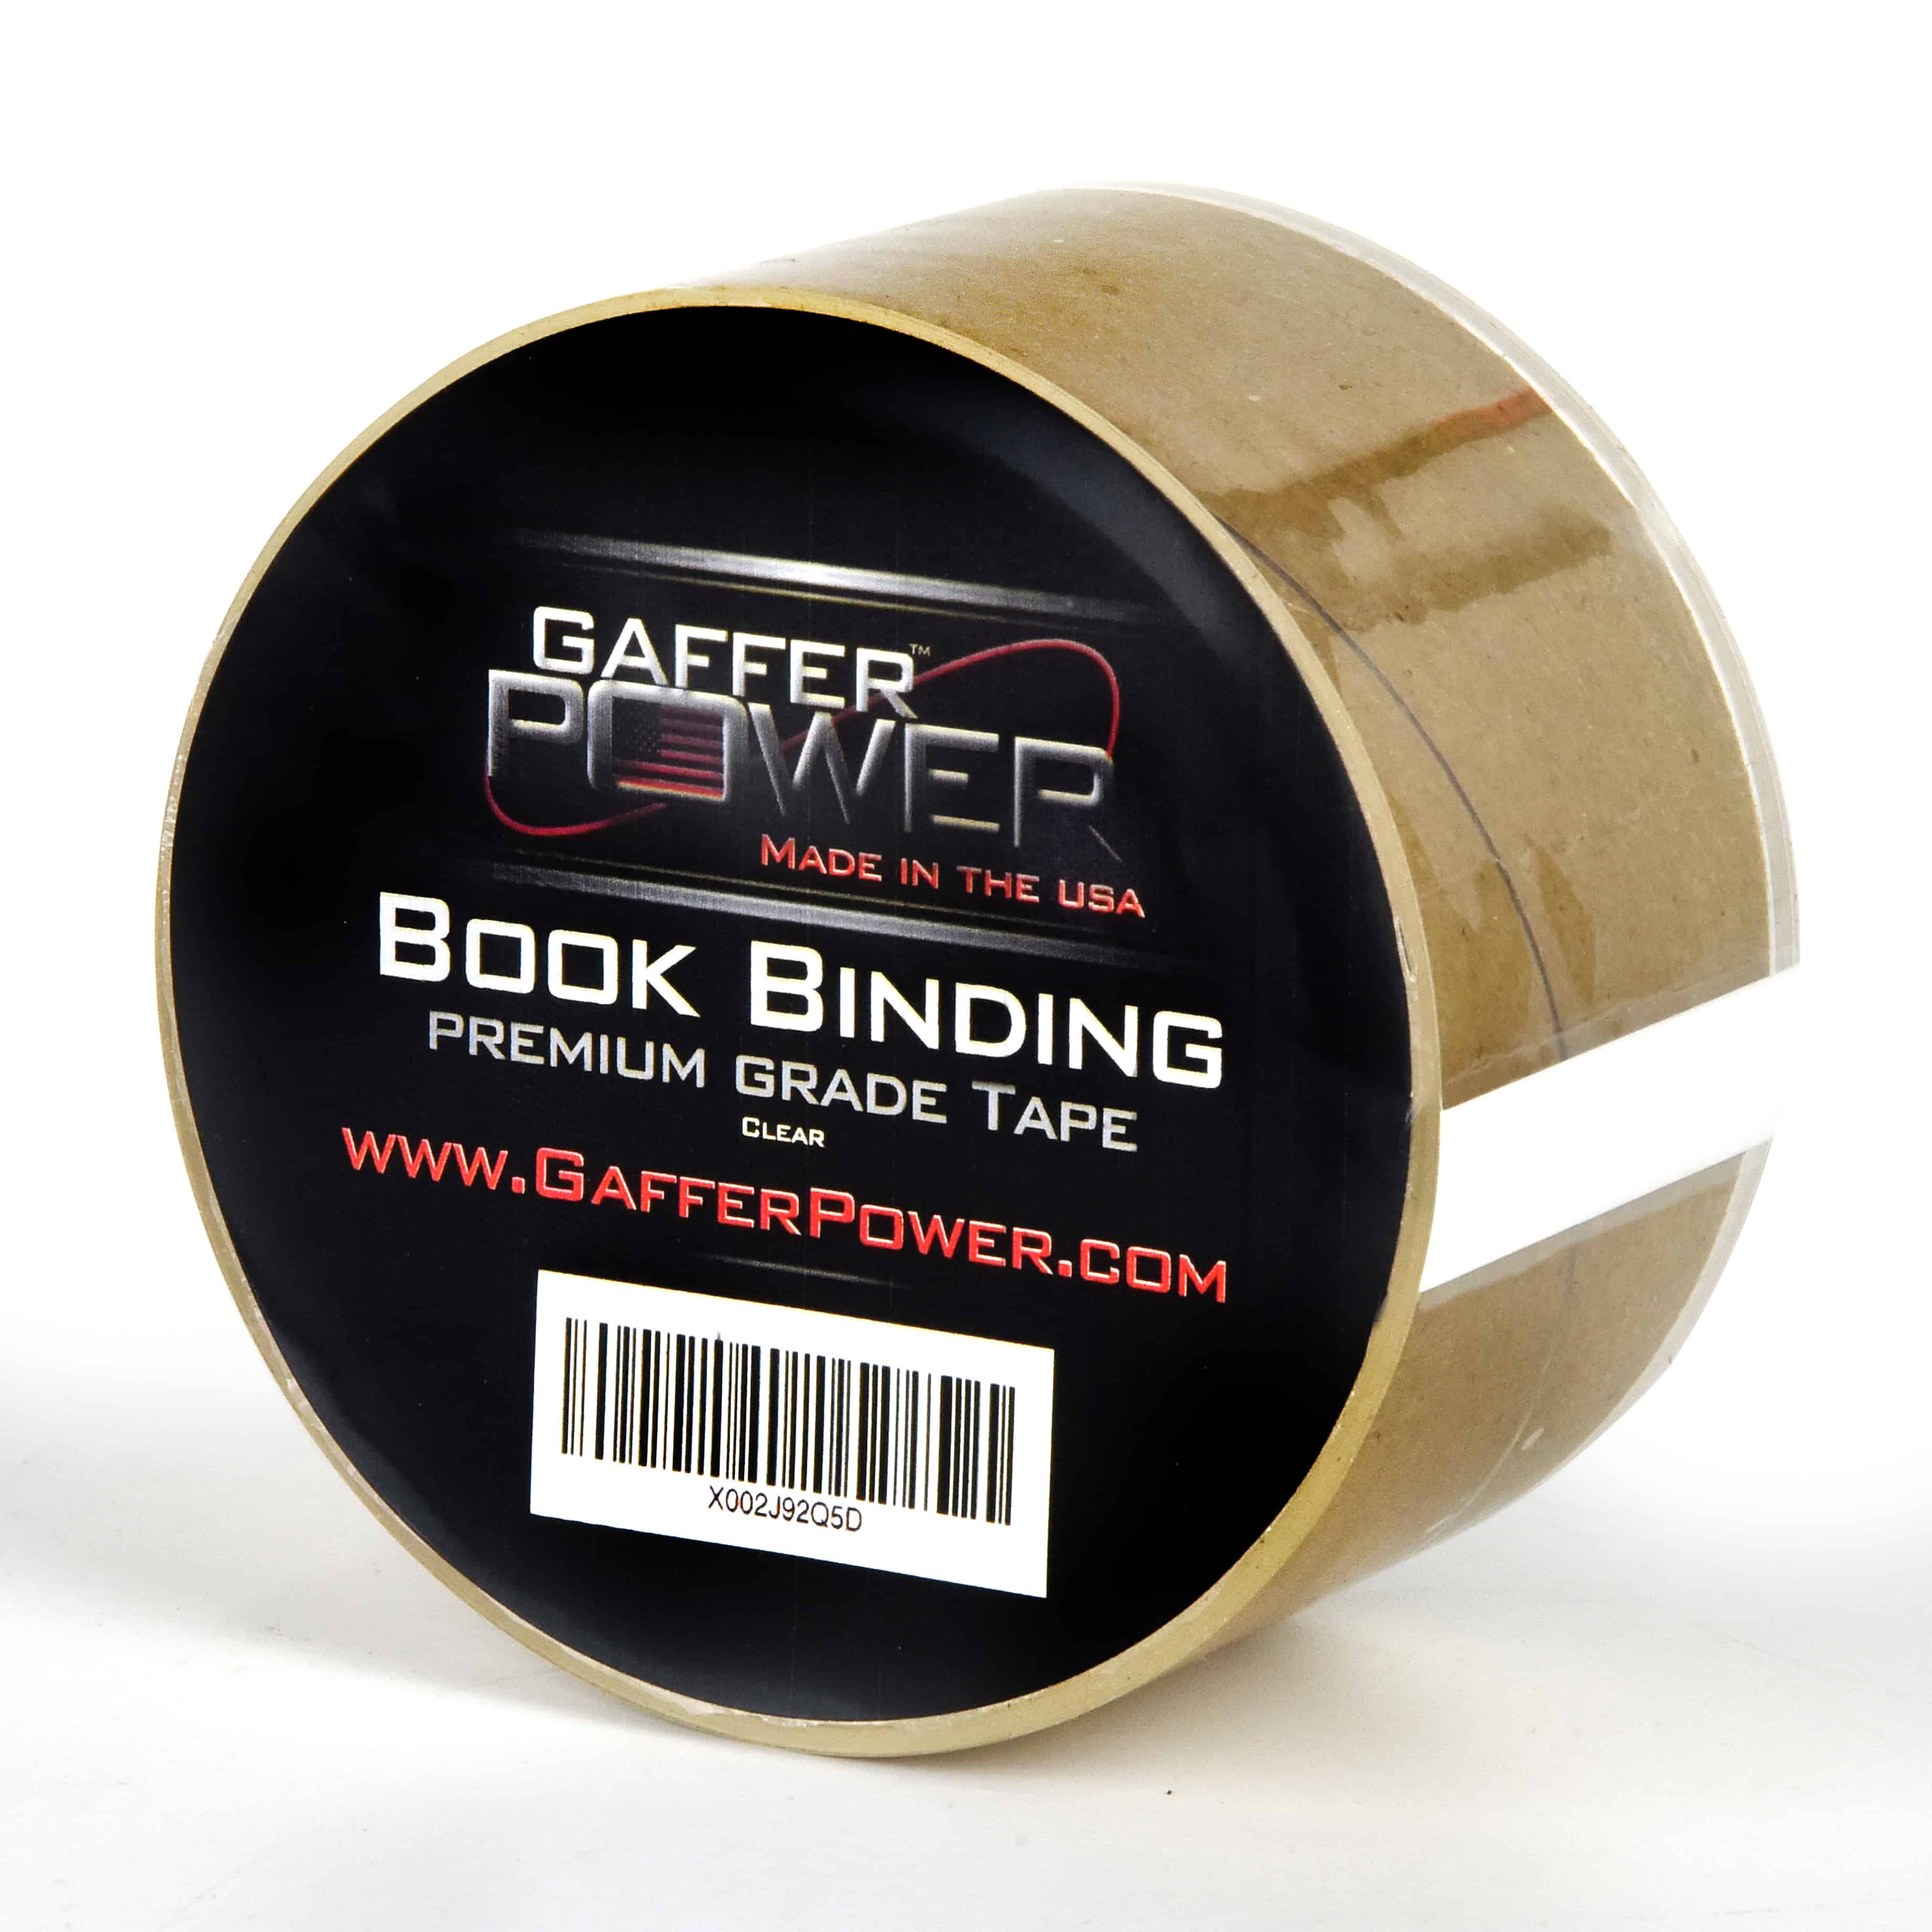 Clear Book Binding Repair Tape - 2 x 15 Yards